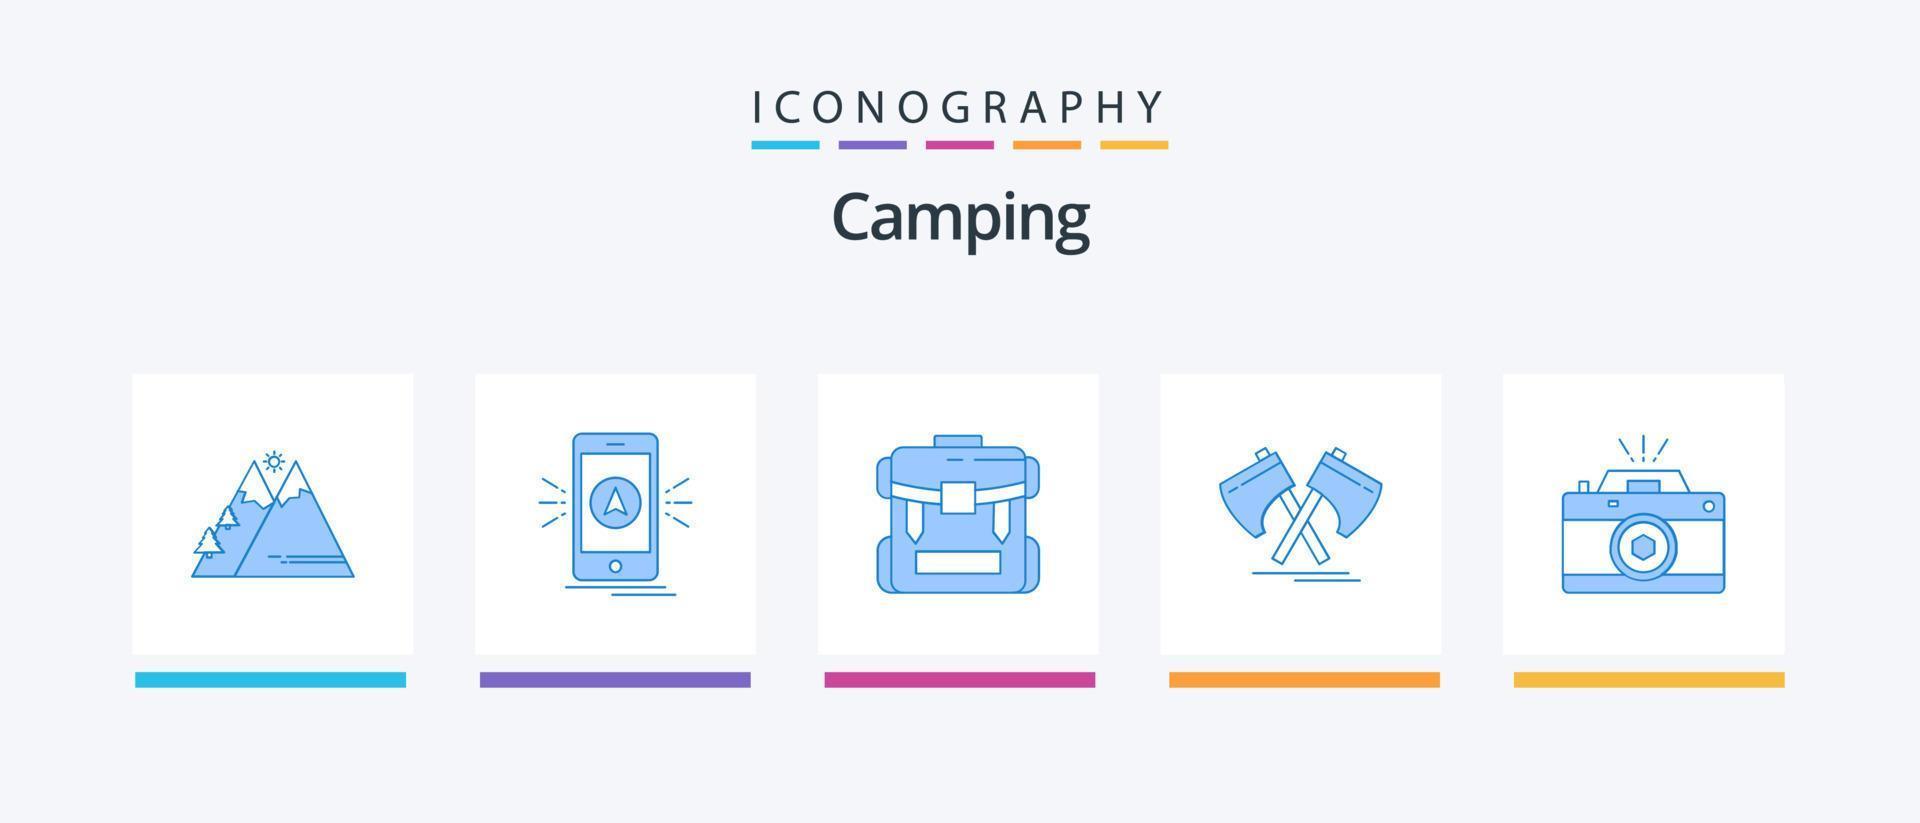 pack d'icônes de camping bleu 5 comprenant un outil. hache. GPS. bagage. fermeture éclair. conception d'icônes créatives vecteur